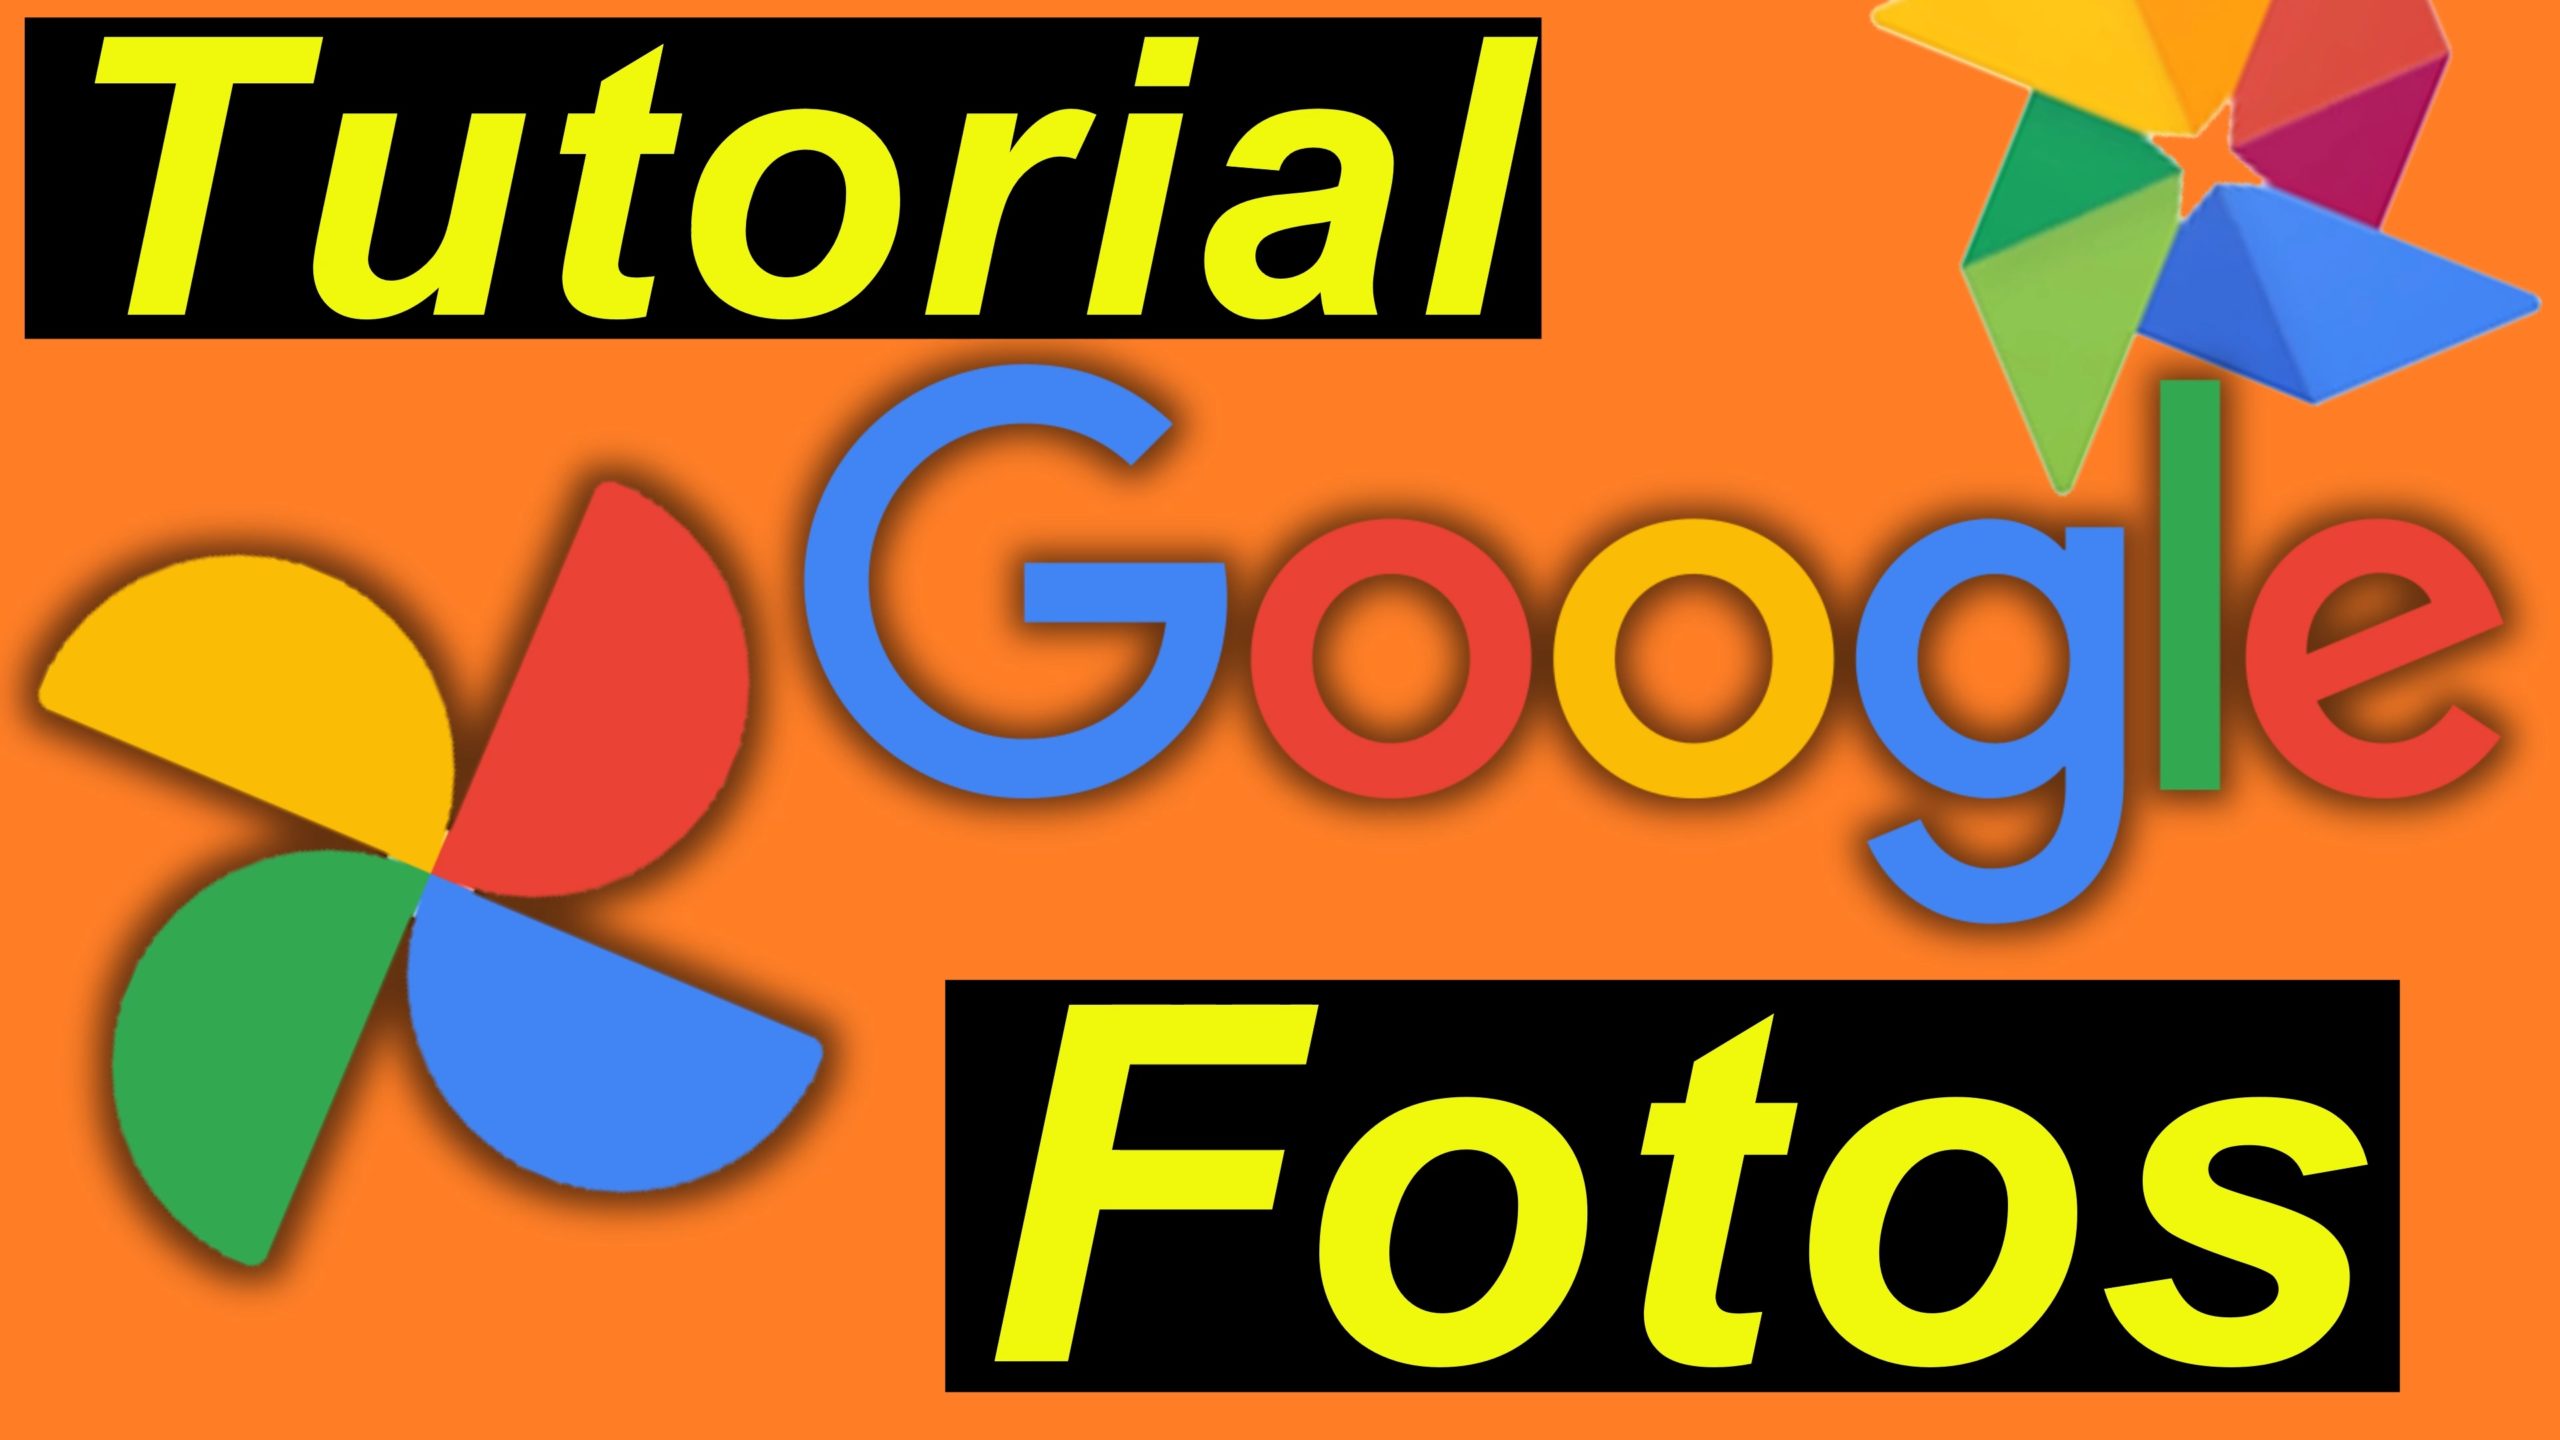 Tutorial: Google Fotos erklärt, eingerichtet und verwendet